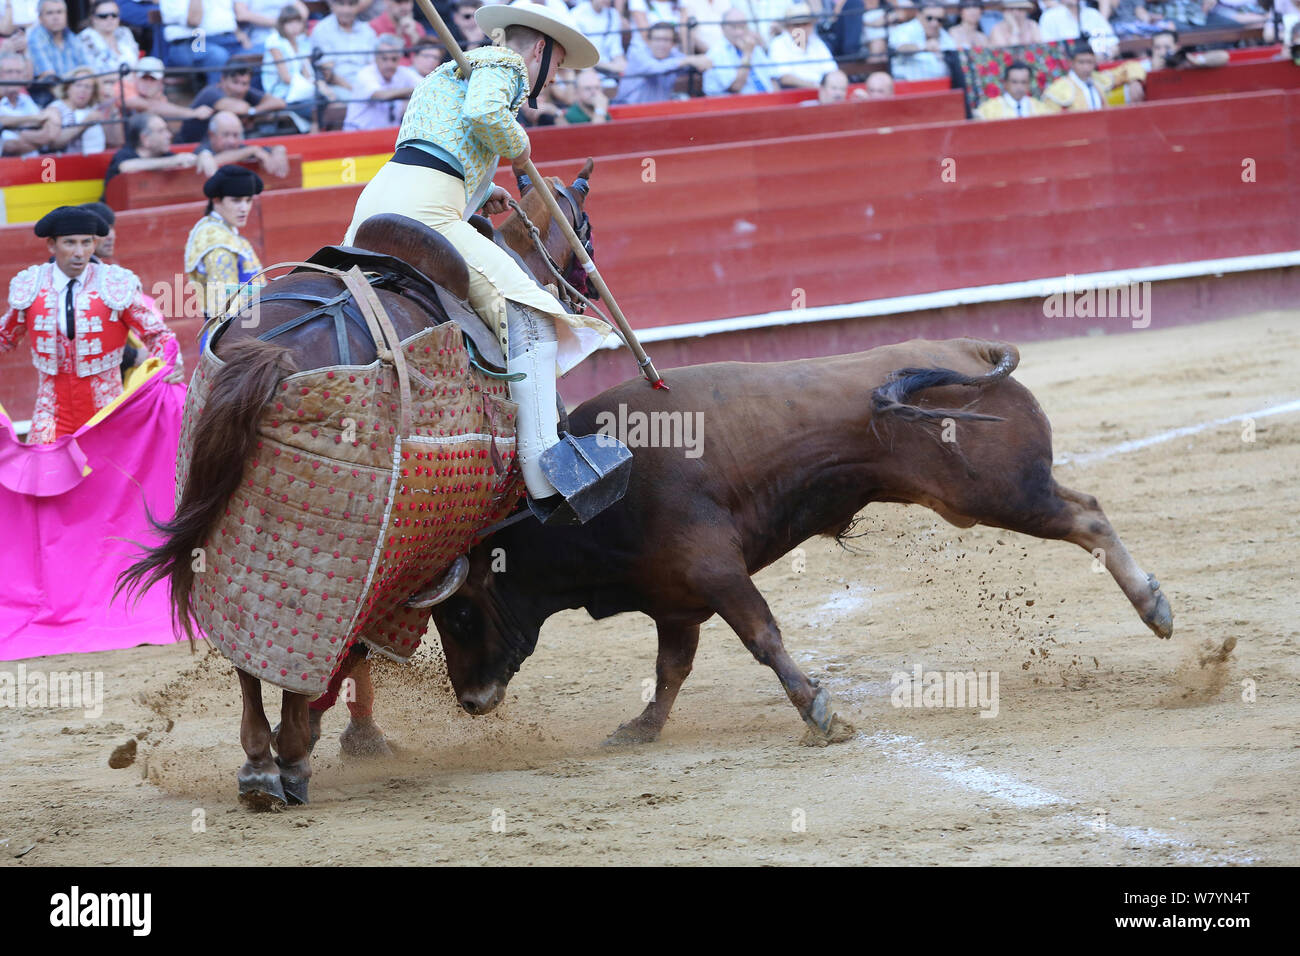 Stier umklappen Pferd durch das Tragen von schützender&#39; Peto&#39; padding in der ersten Runde der Stierkampf, Tercio de Varasbull, Plaza de Toros, Valencia, Spanien, Juli 2014. Stockfoto